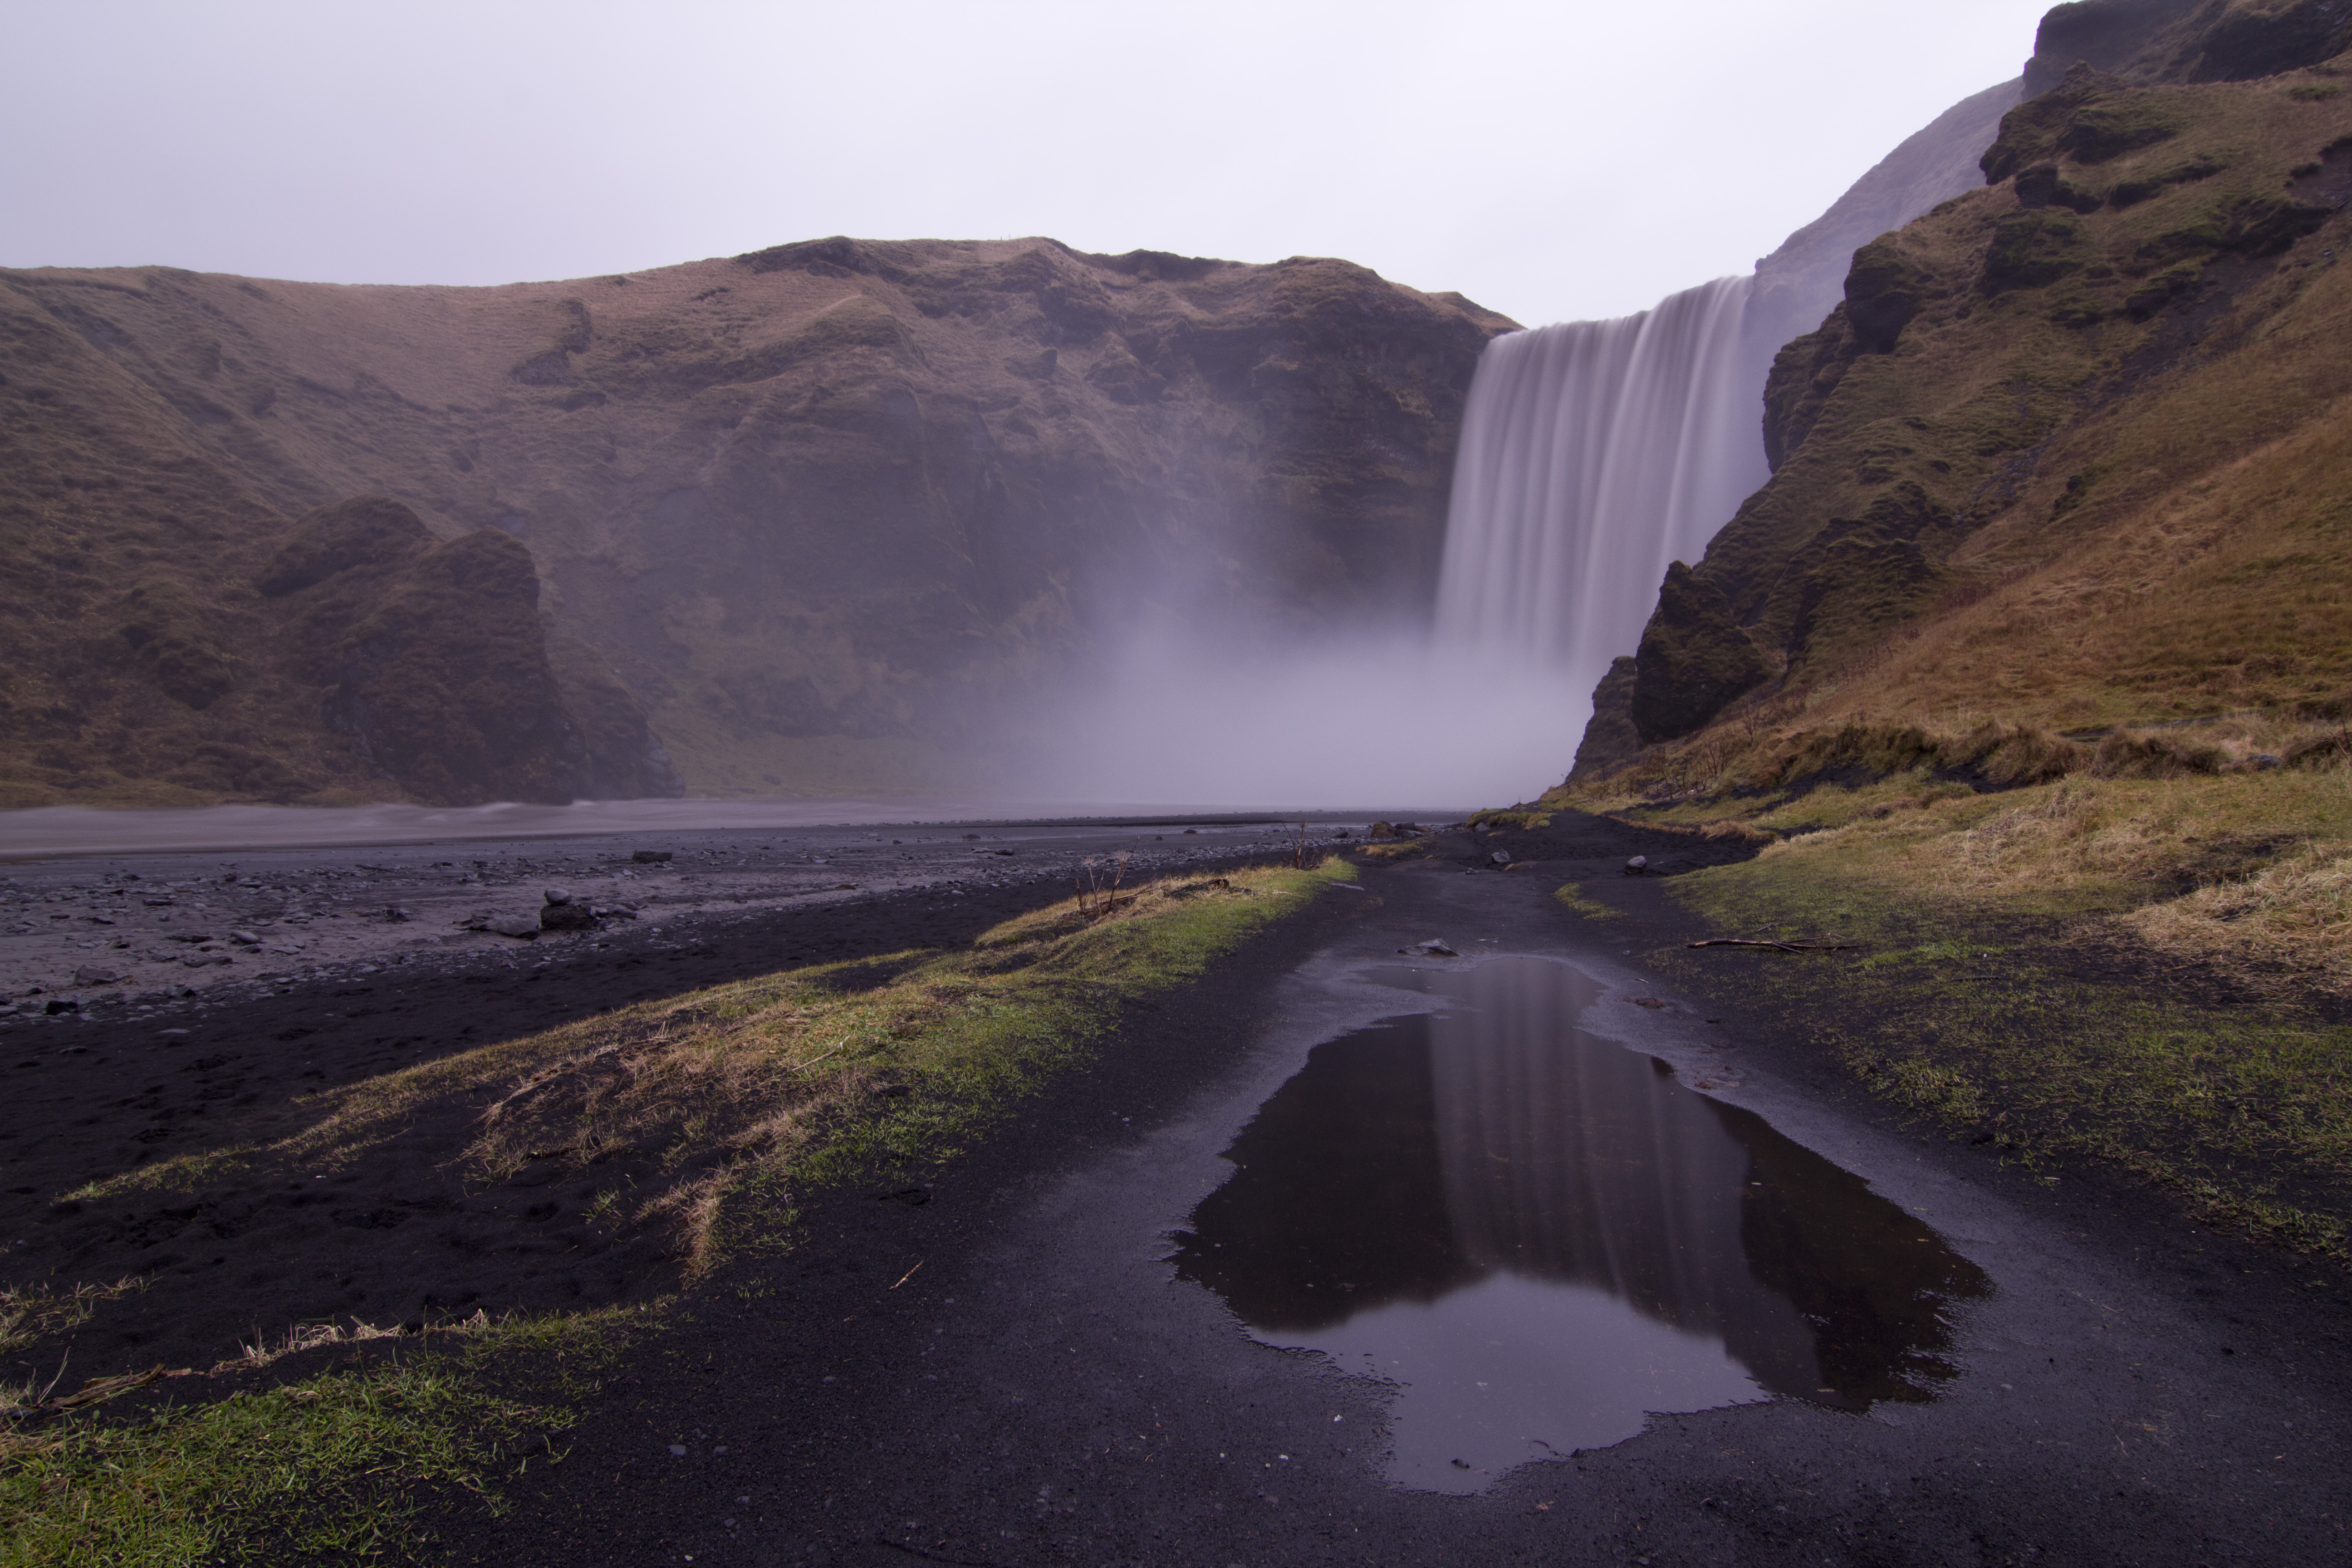 即时是在阴郁的日子，冰岛南部的著名瀑布斯科加瀑布(Skógafoss)也同样美丽动人